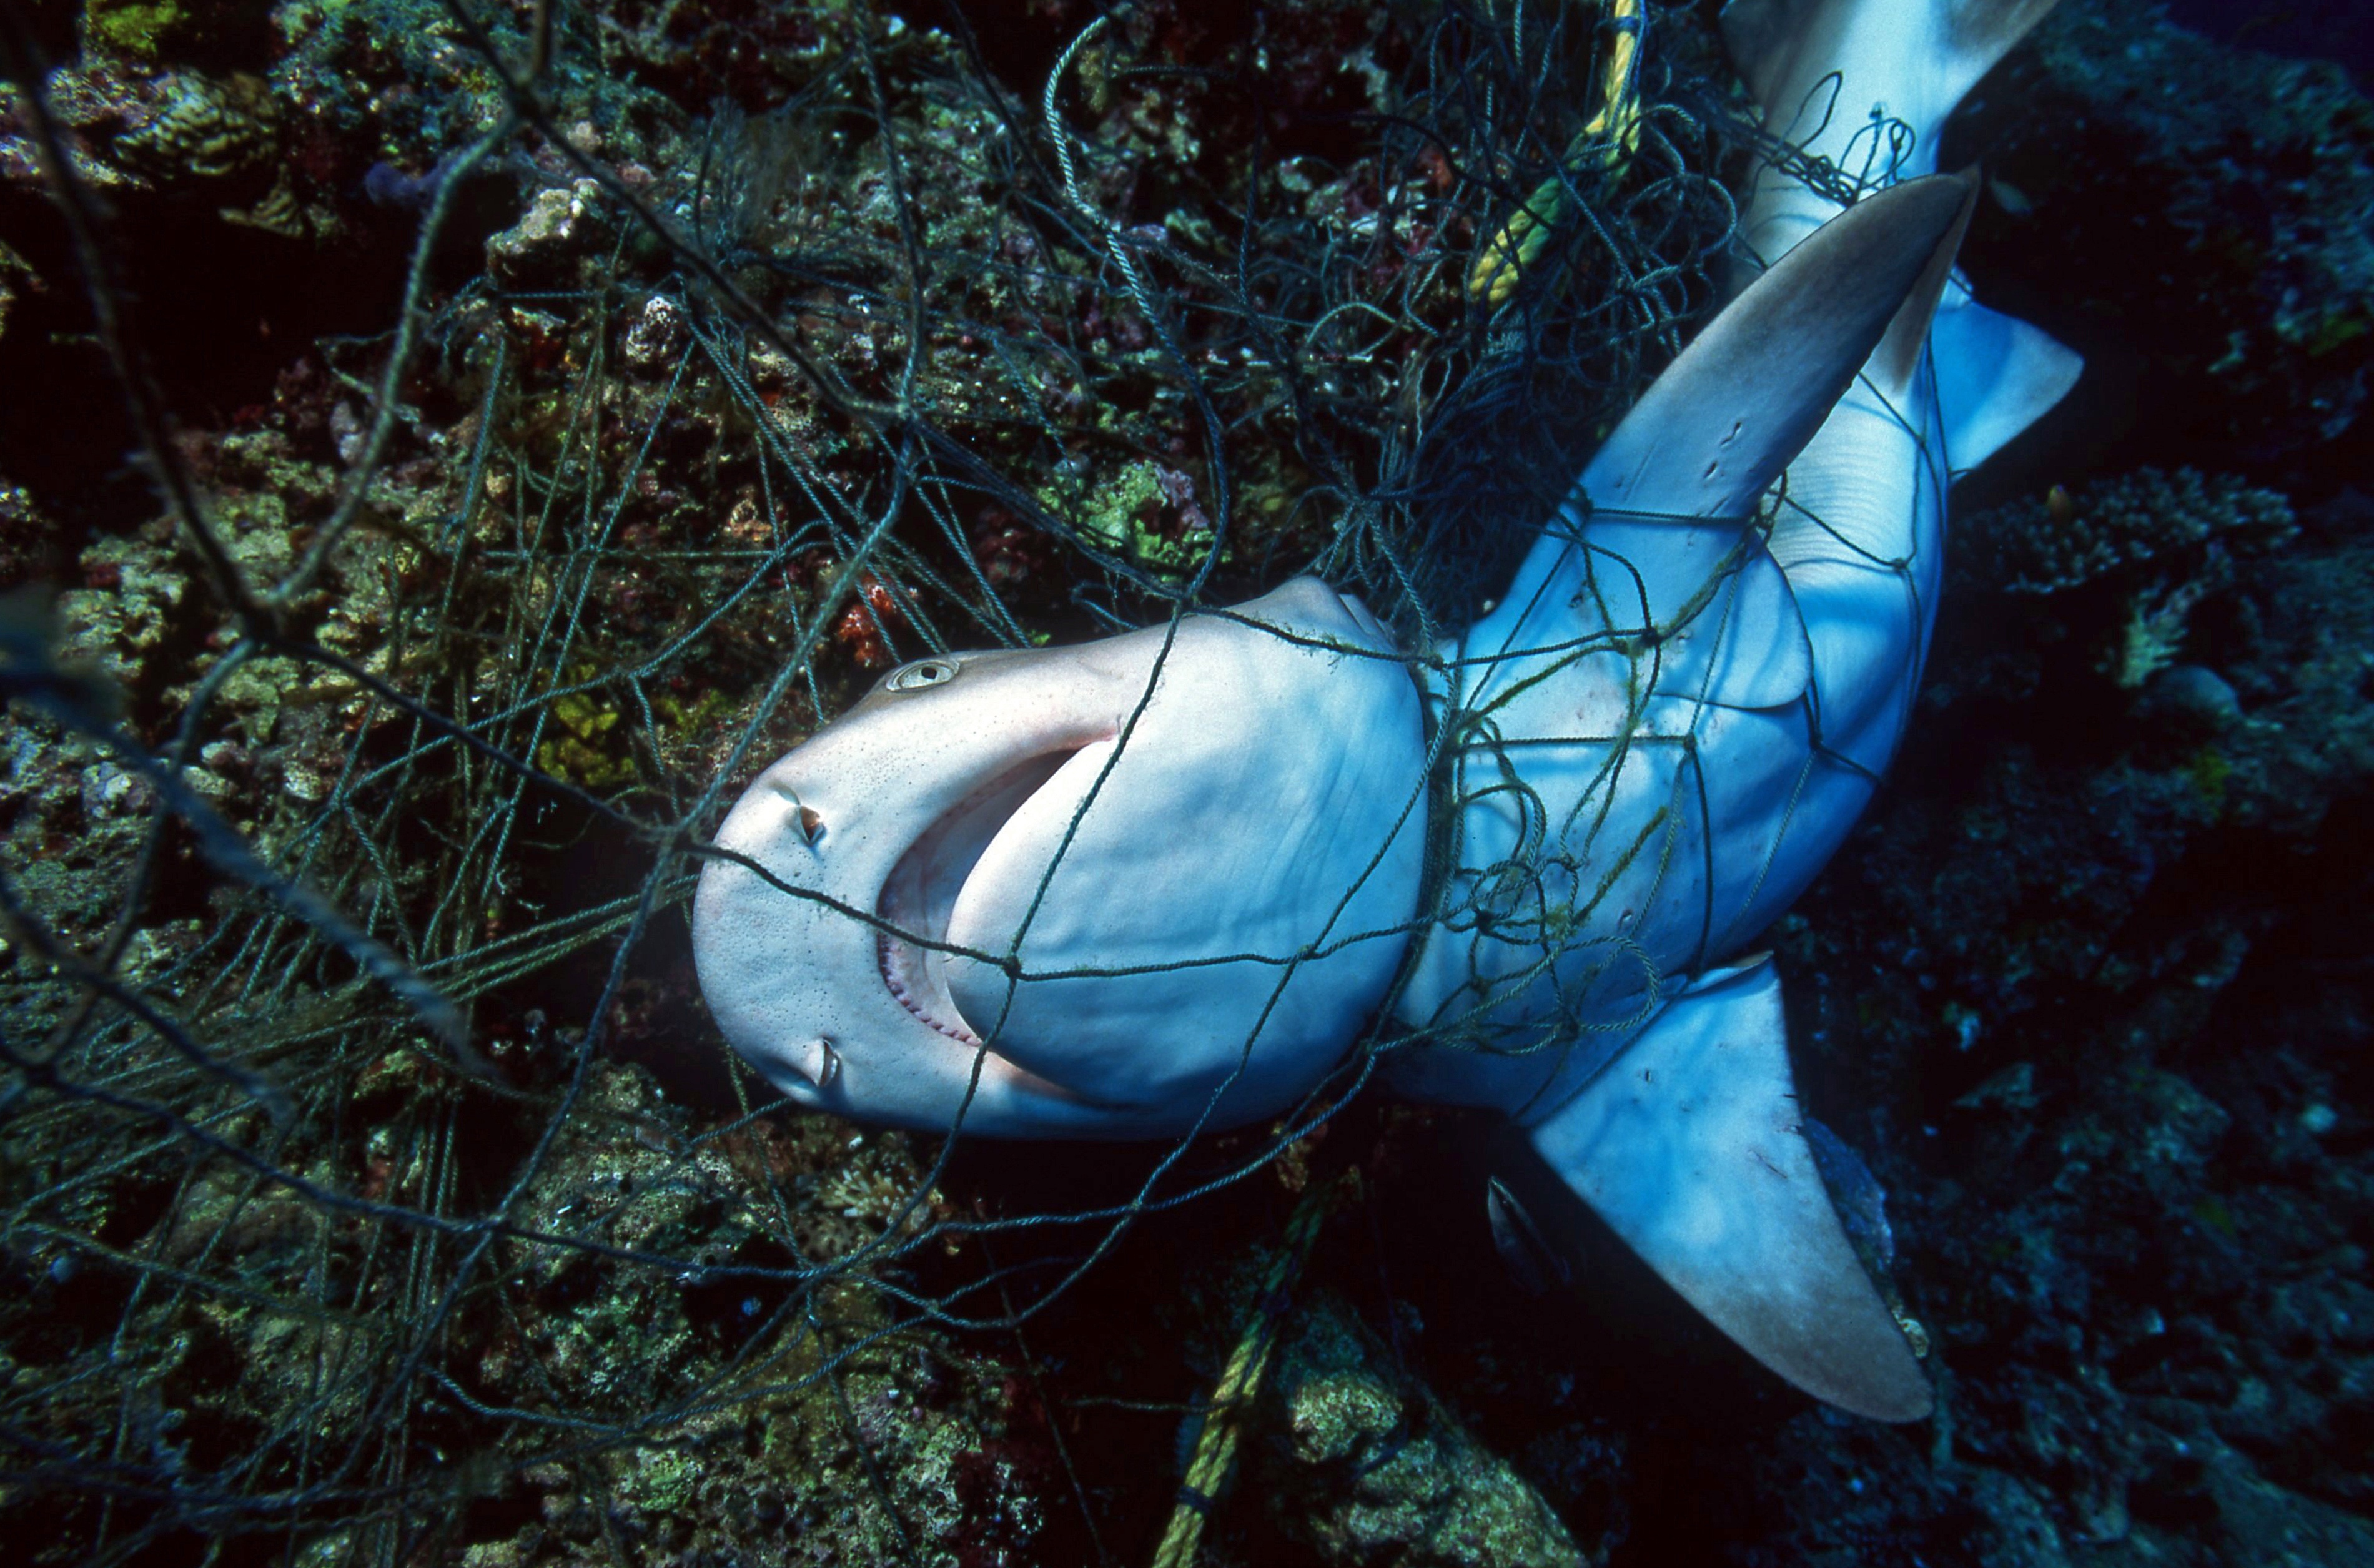 Les populations de requins et de raies déclinent en raison de la surpêche principalement en raison de la surpêche. © VisionDive, Adobe Stock